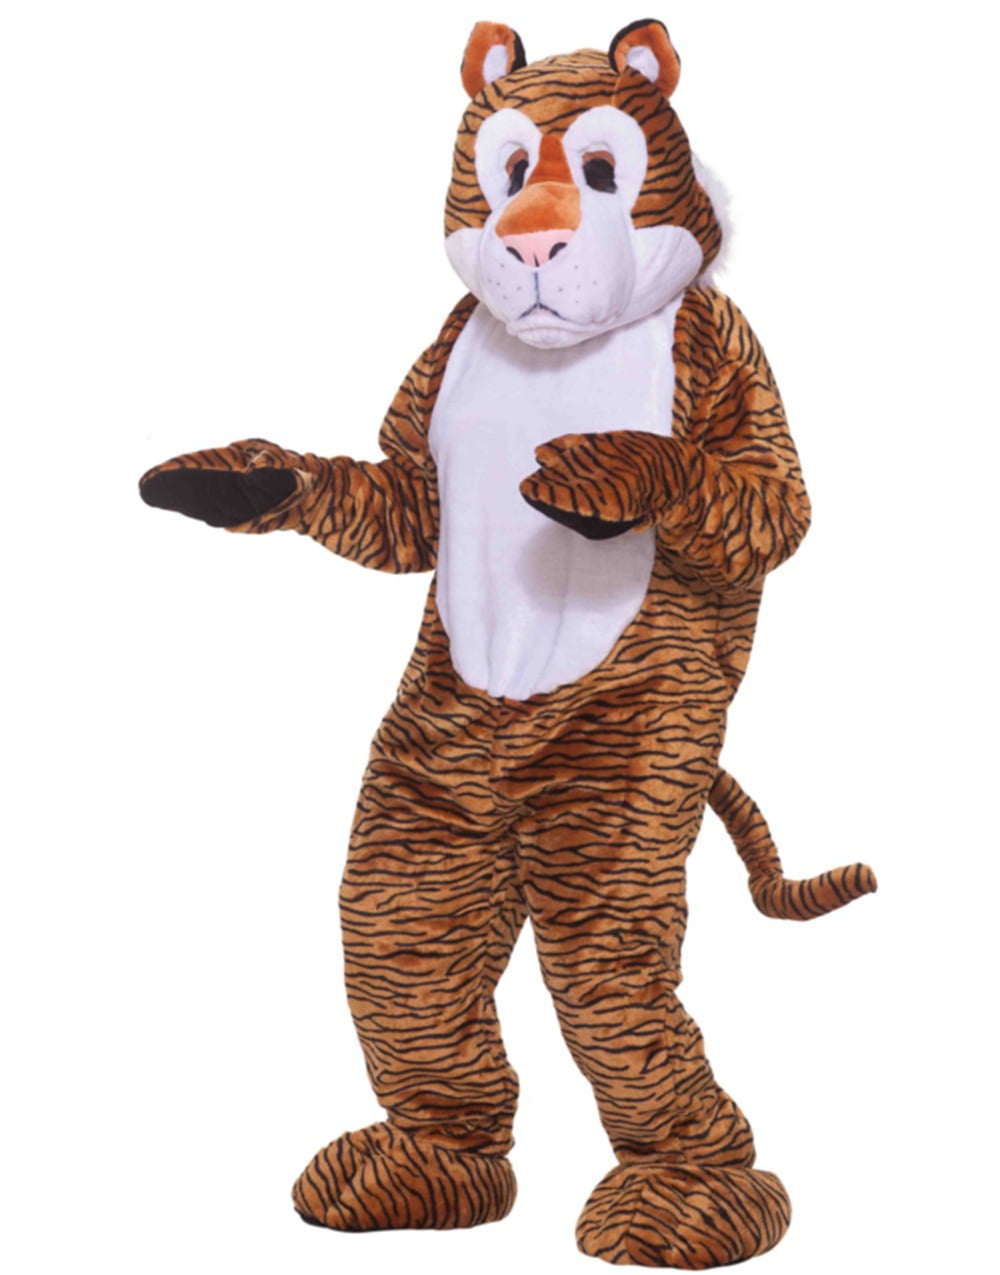 Tiger Mascot Costume, Adult Mascot Costume, Party Mascot Costume, Event  Mascot Costume, Birthday Party Costume, Luxury Mascot Costume -  Canada